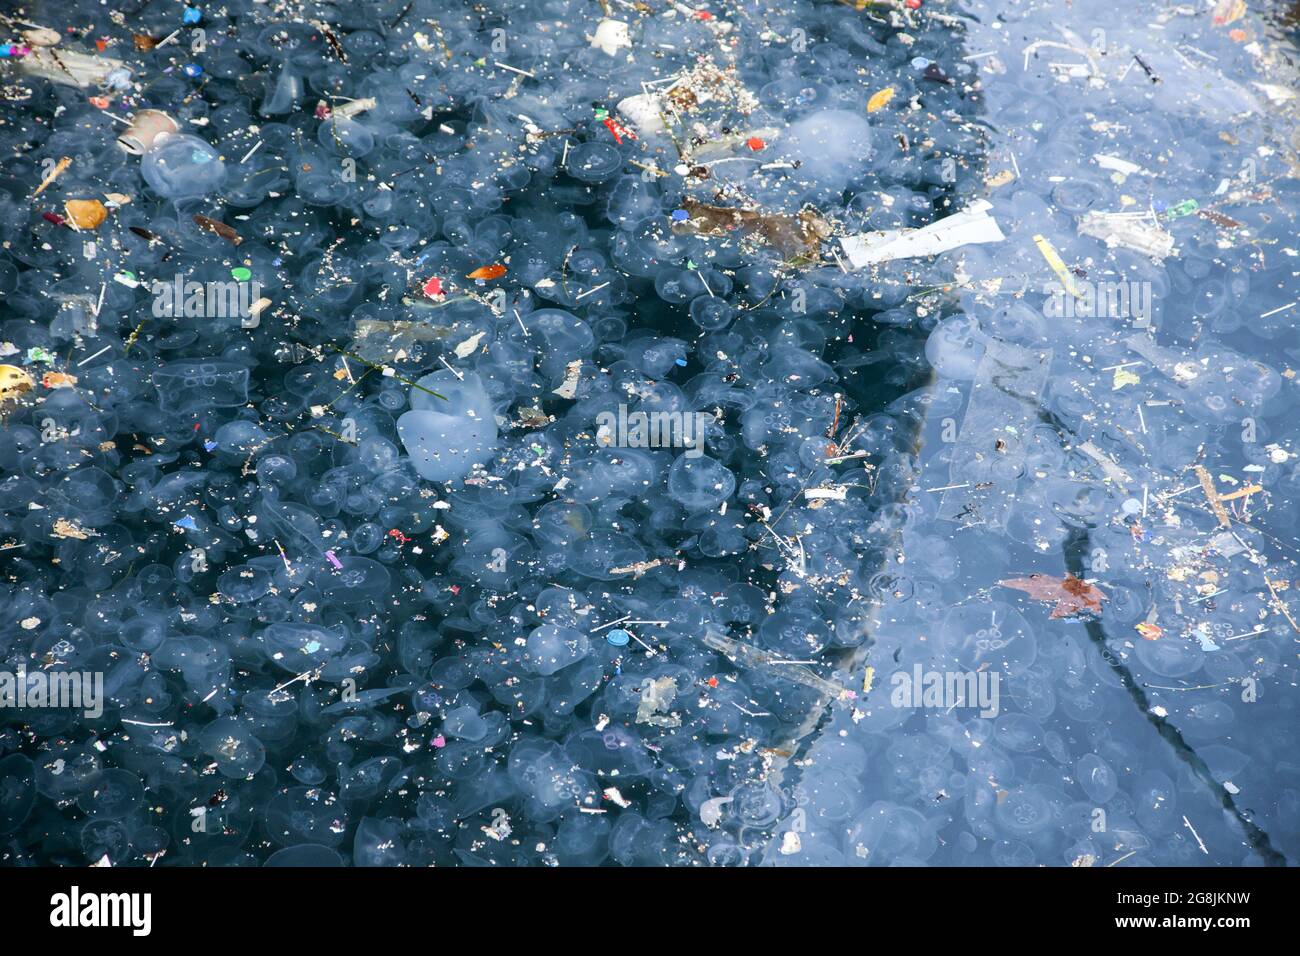 Jellyfish and waste.Marmara sea Istanbul Stock Photo